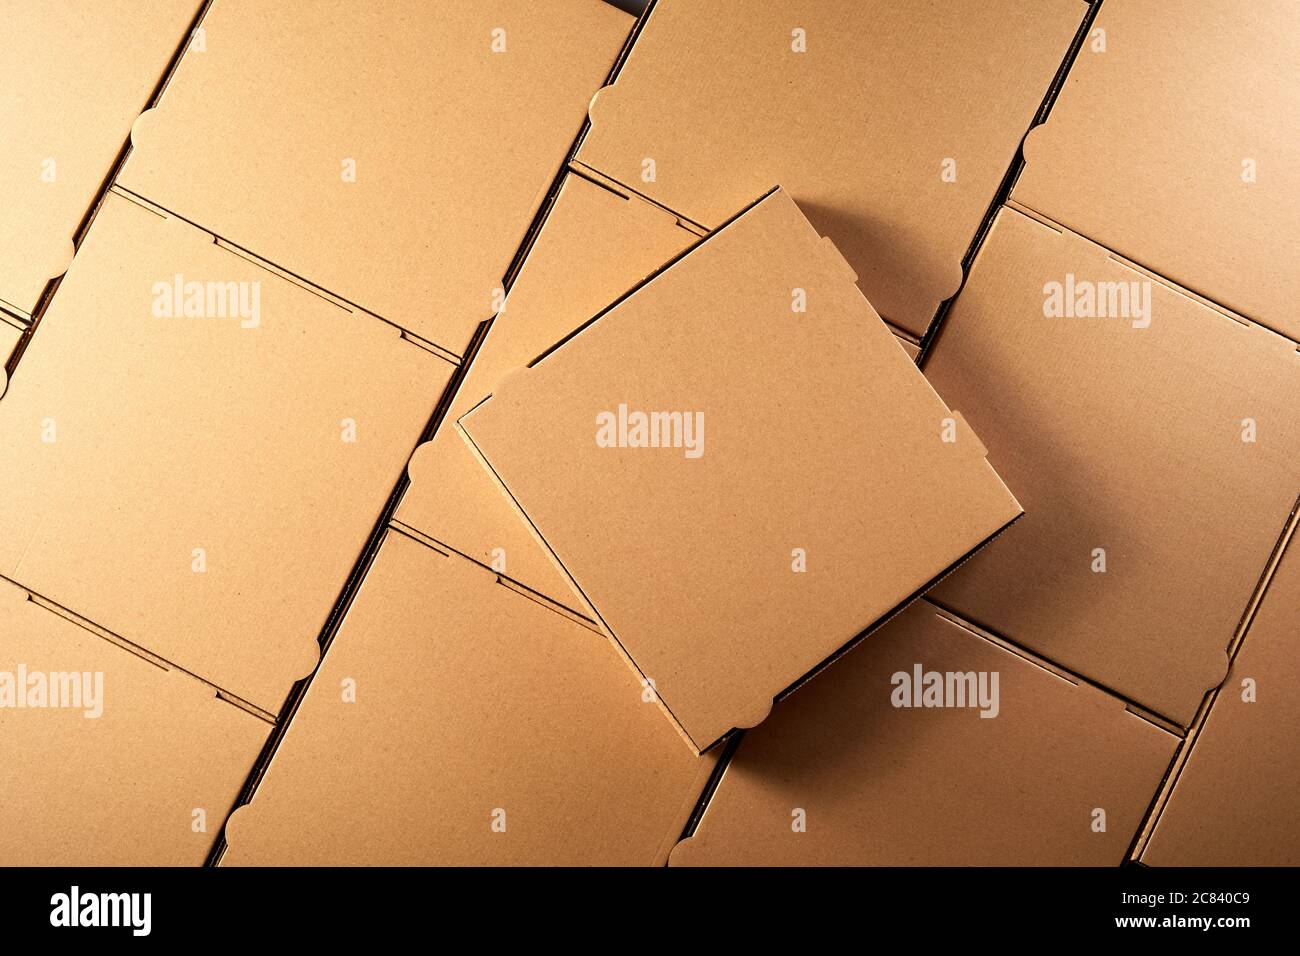 Hintergrundtextur von neuen unbeschrifteten generischen braunen Pappkartons zum Mitnehmen von Pizzas mit einer einzigen geschlossenen oben in einer Ansicht von oben Stockfoto